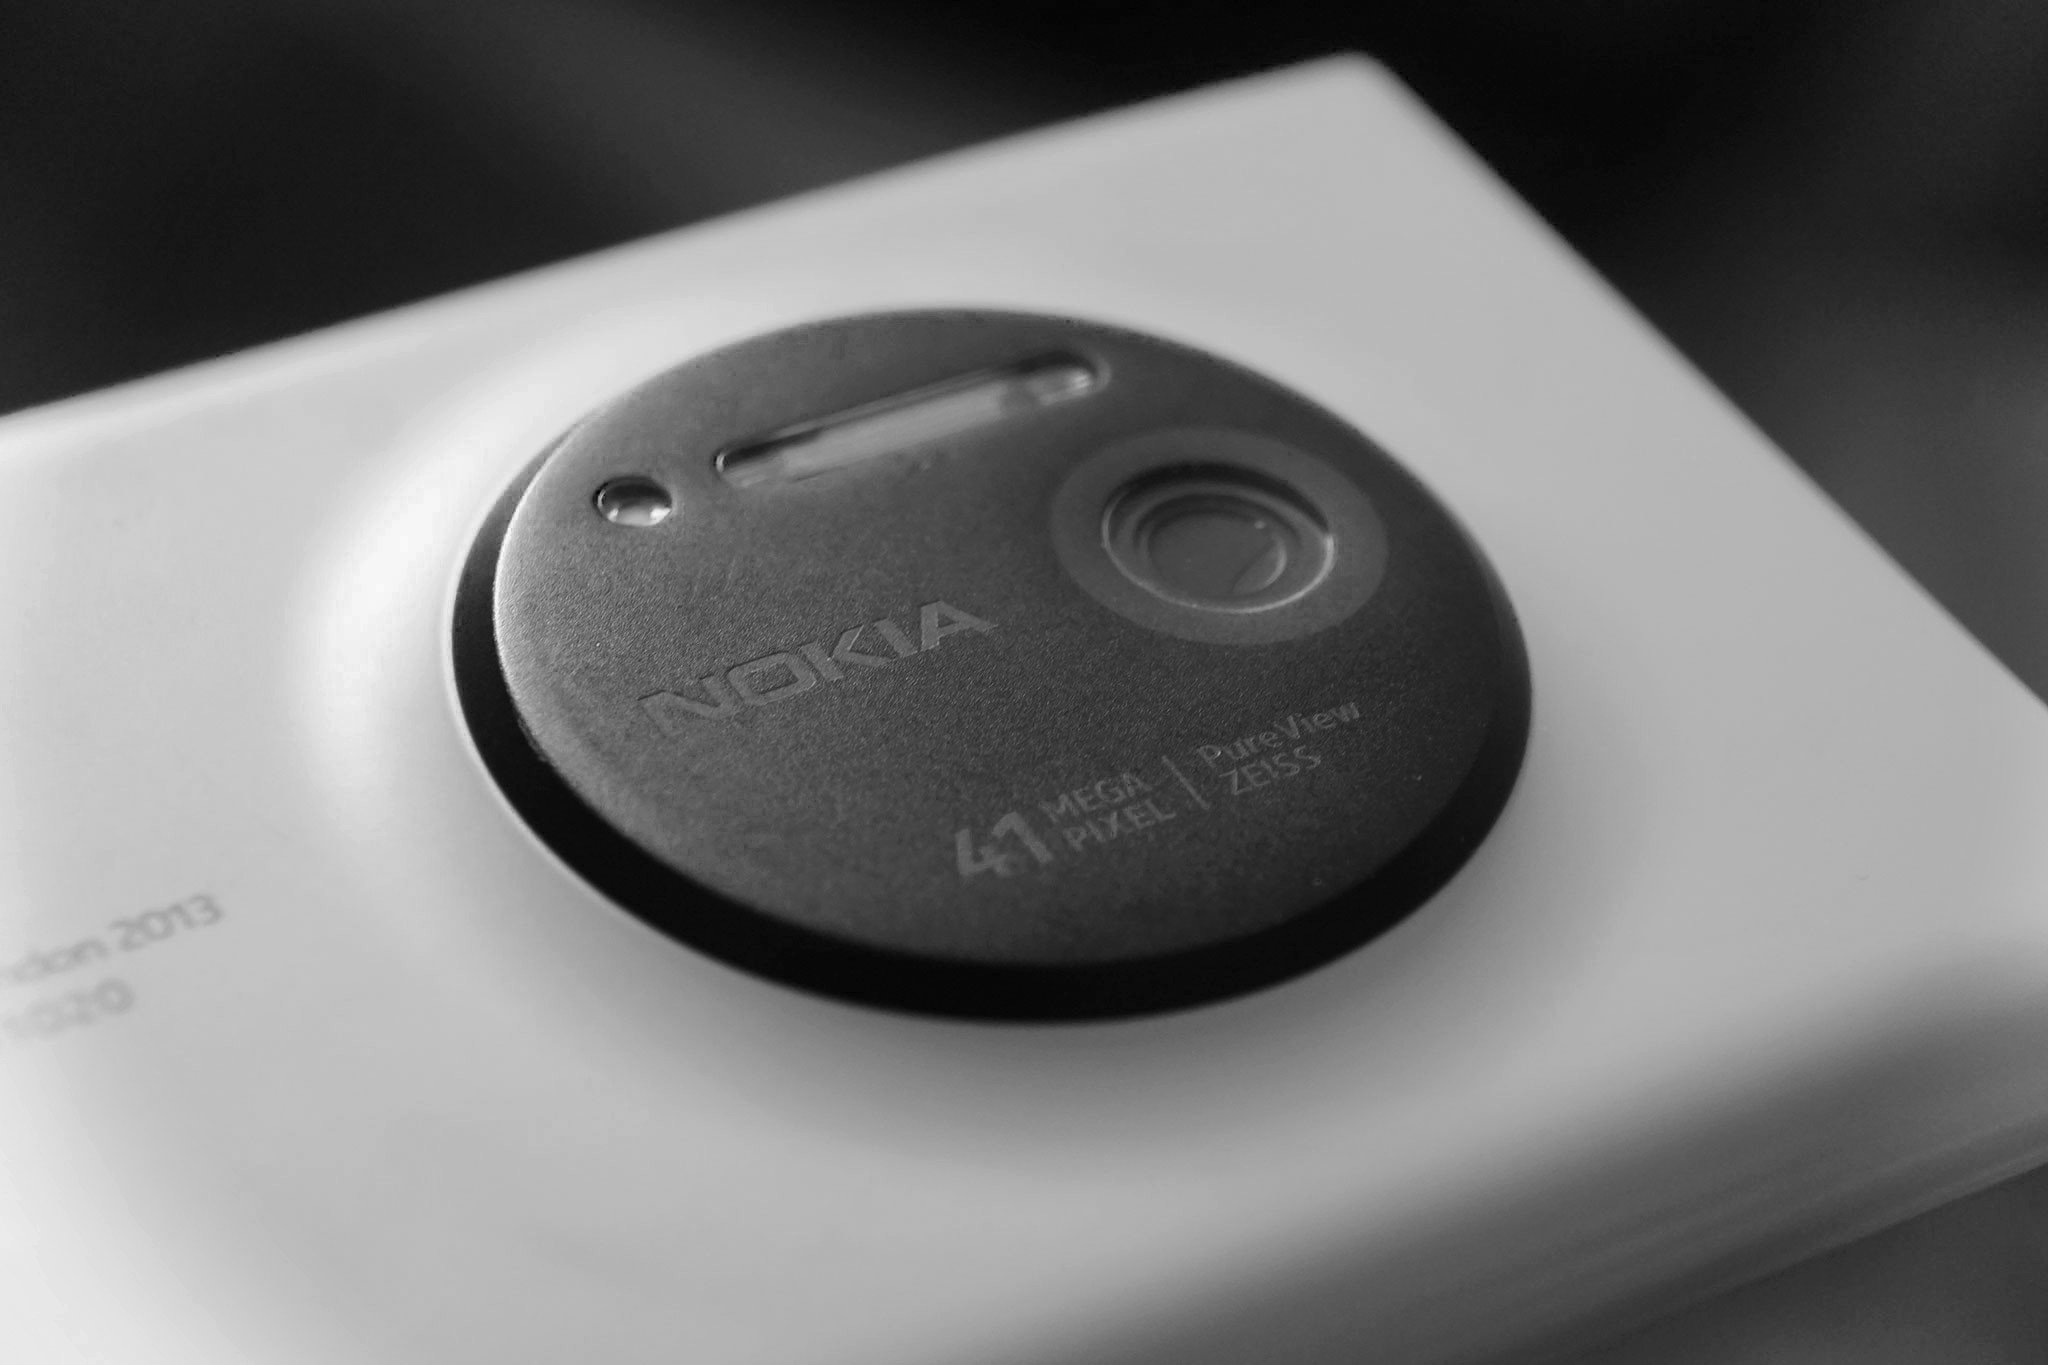 Lumia 1020 in memoriam